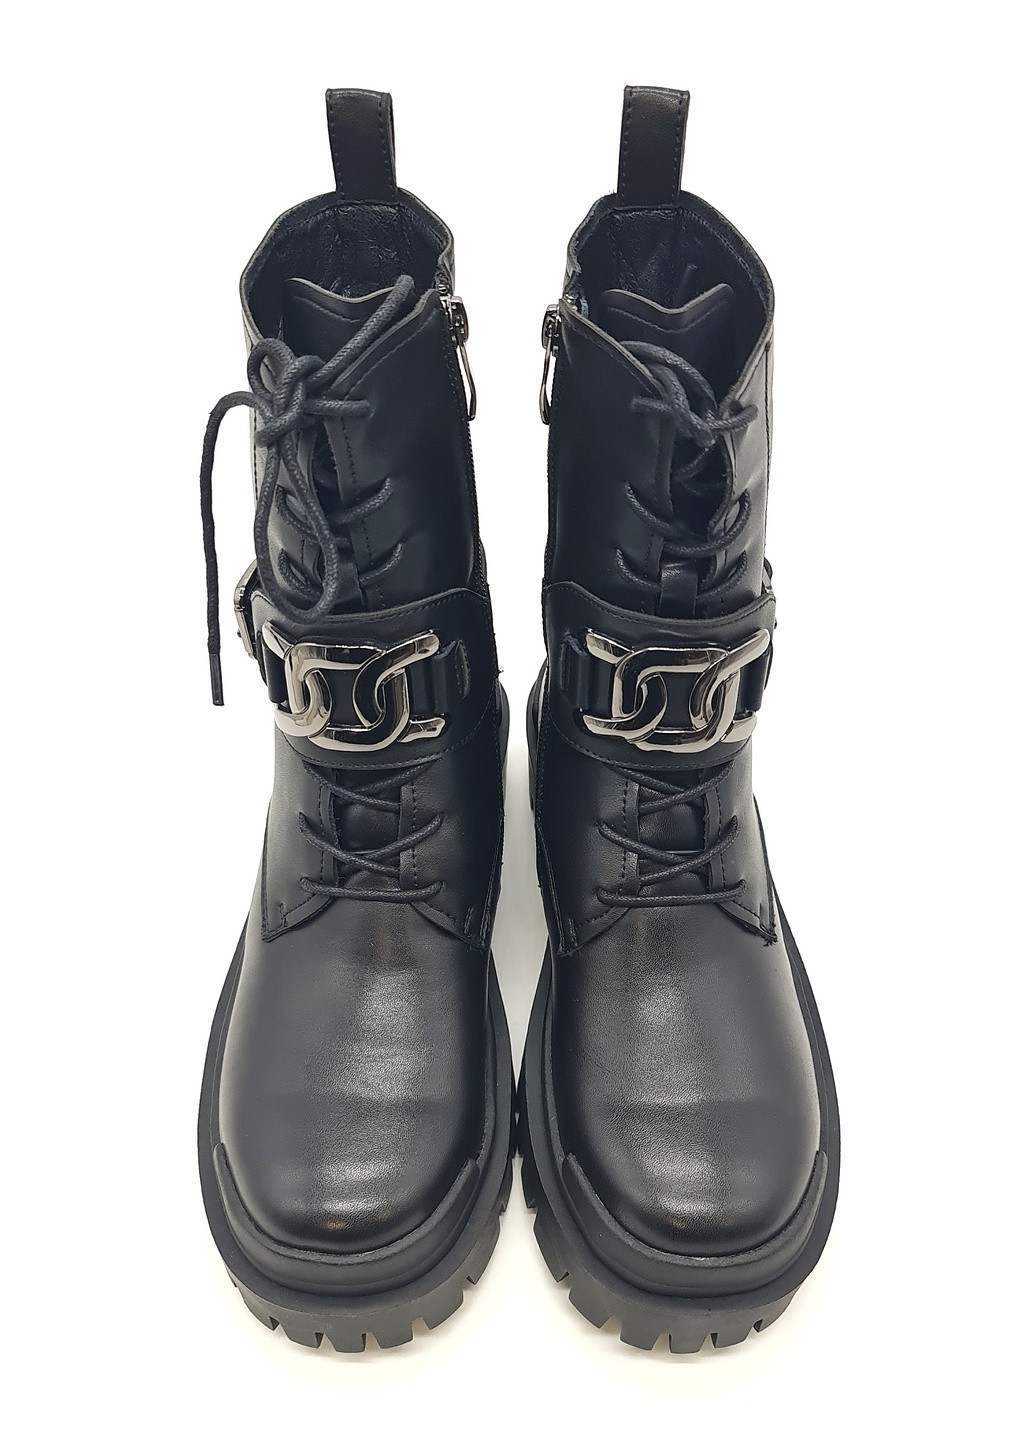 Осенние женские ботинки на овчине черные кожаные eg-12-1 23,5 см (р) Egga